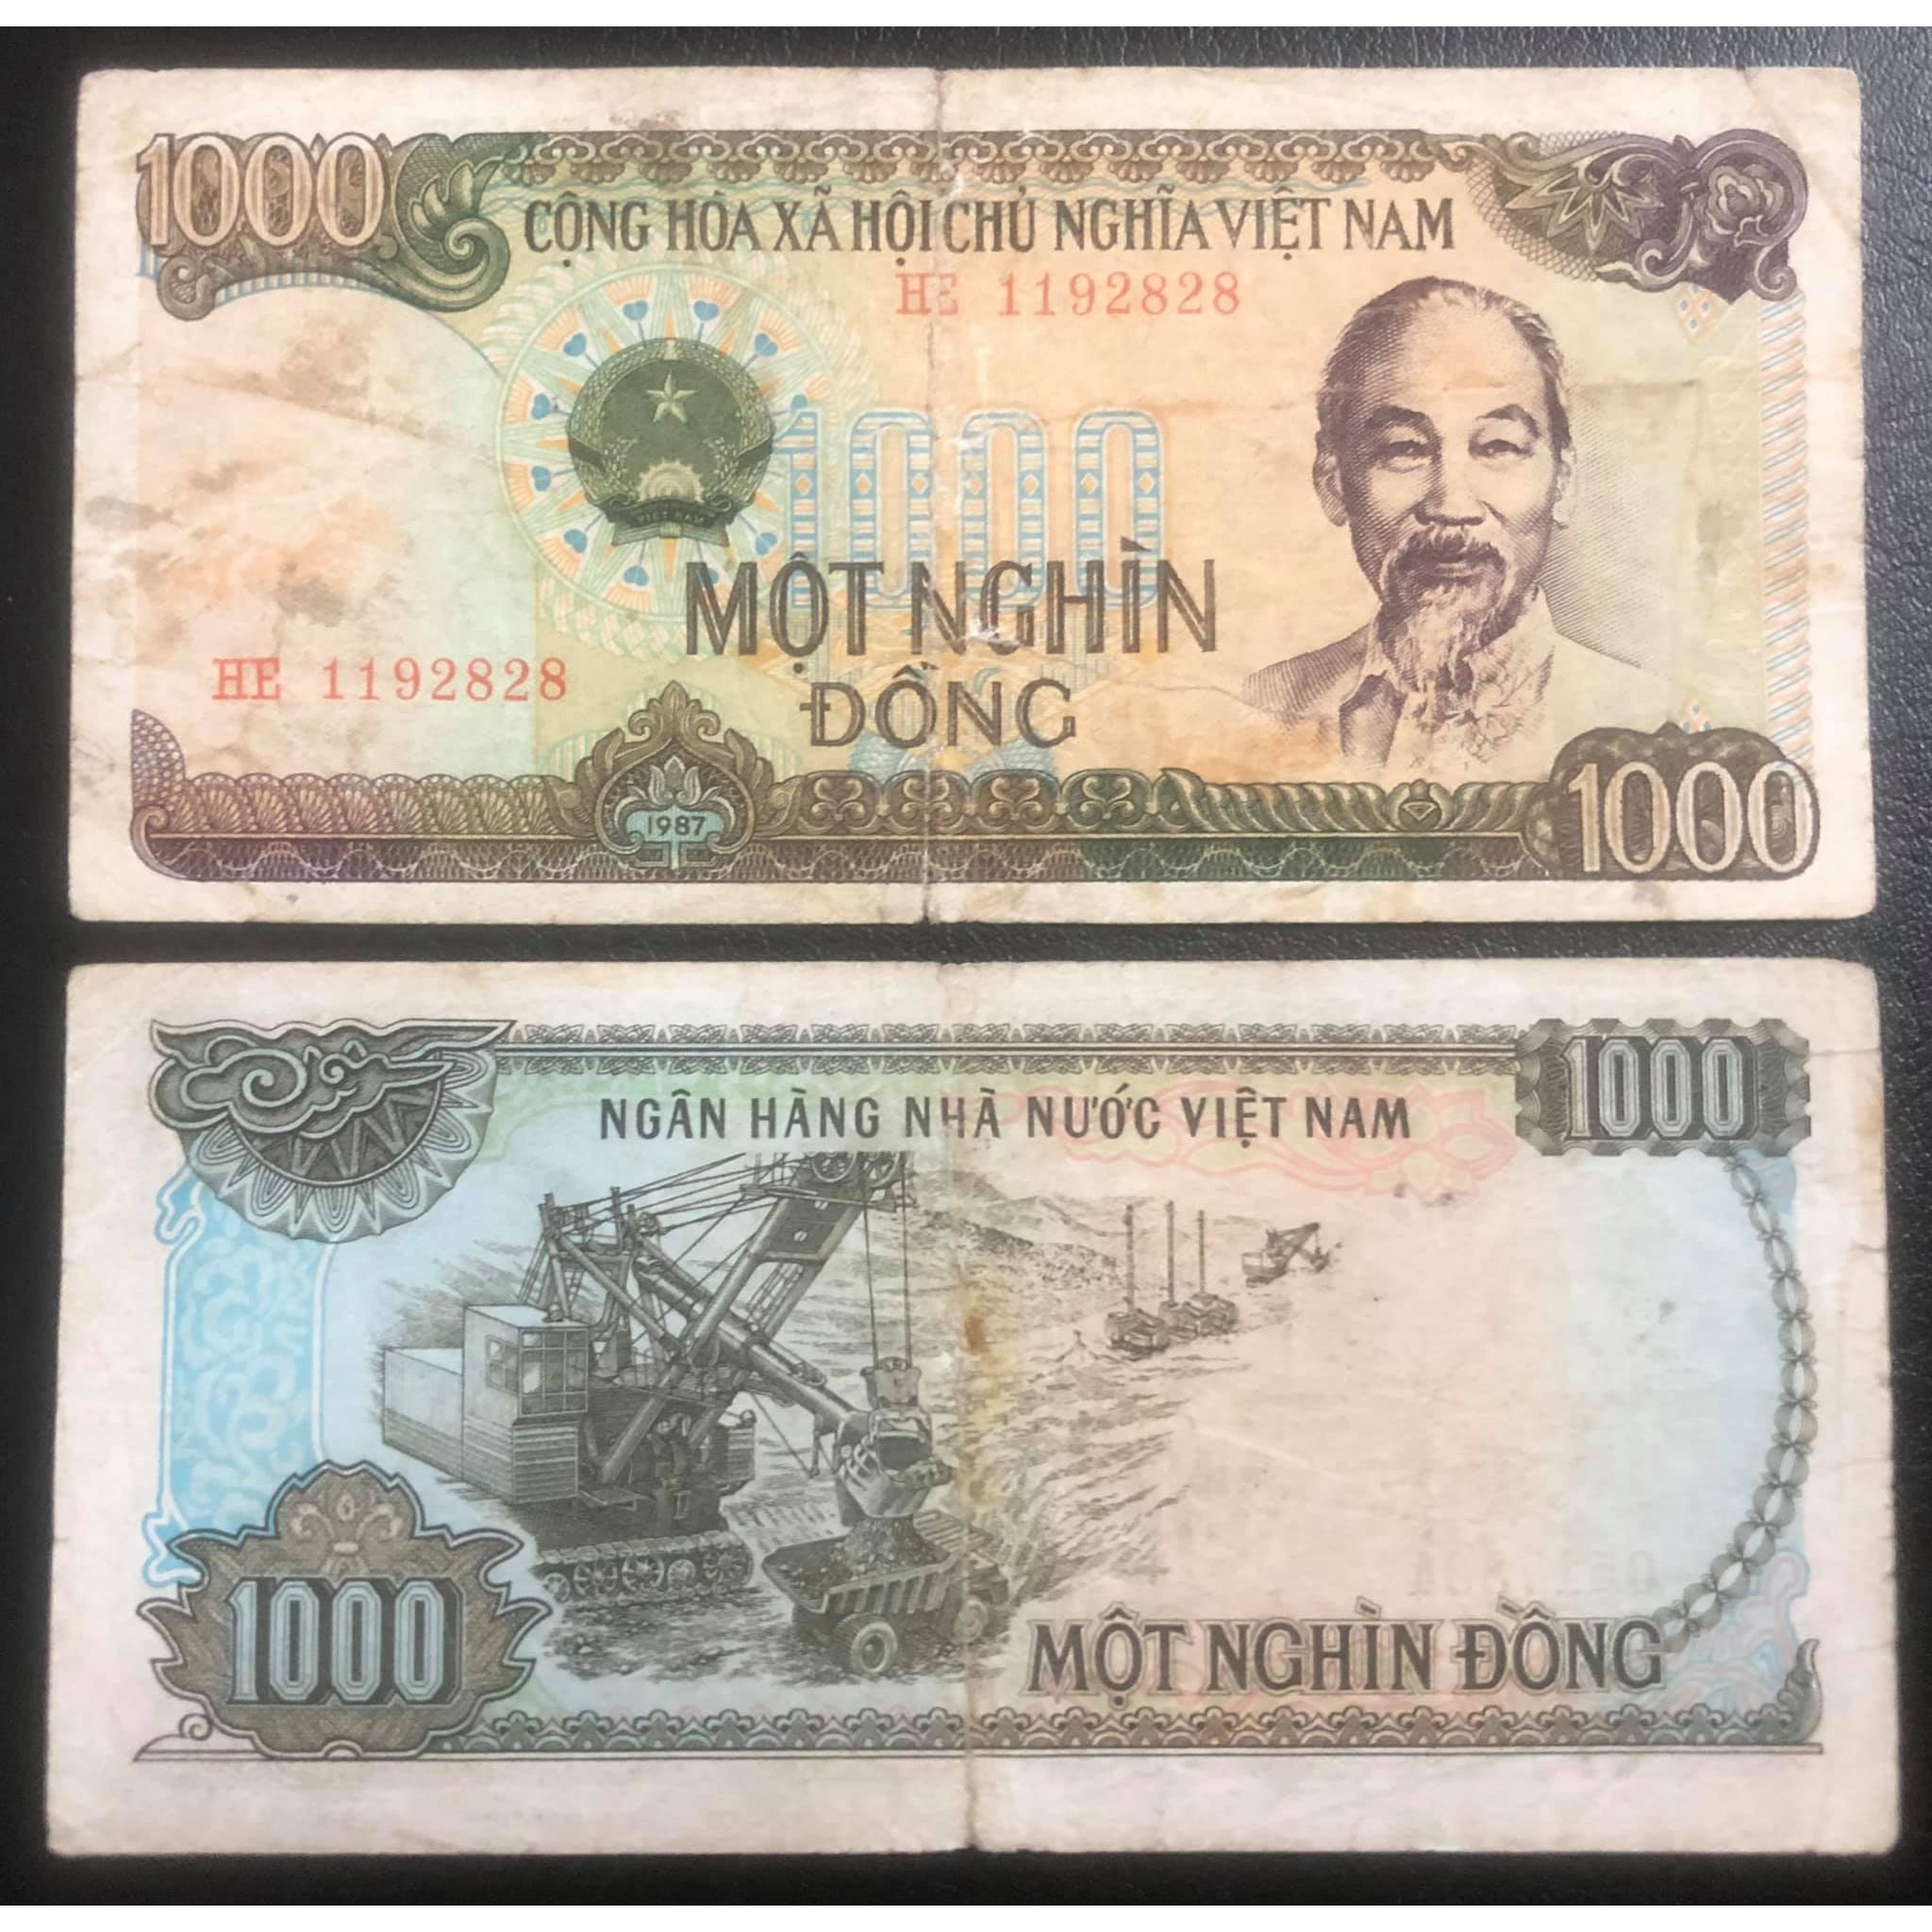 Tờ 1000 đồng 1987 khai thác than ở Quảng Ninh, tiền xưa lưu hành trong thời gian rất ngắn